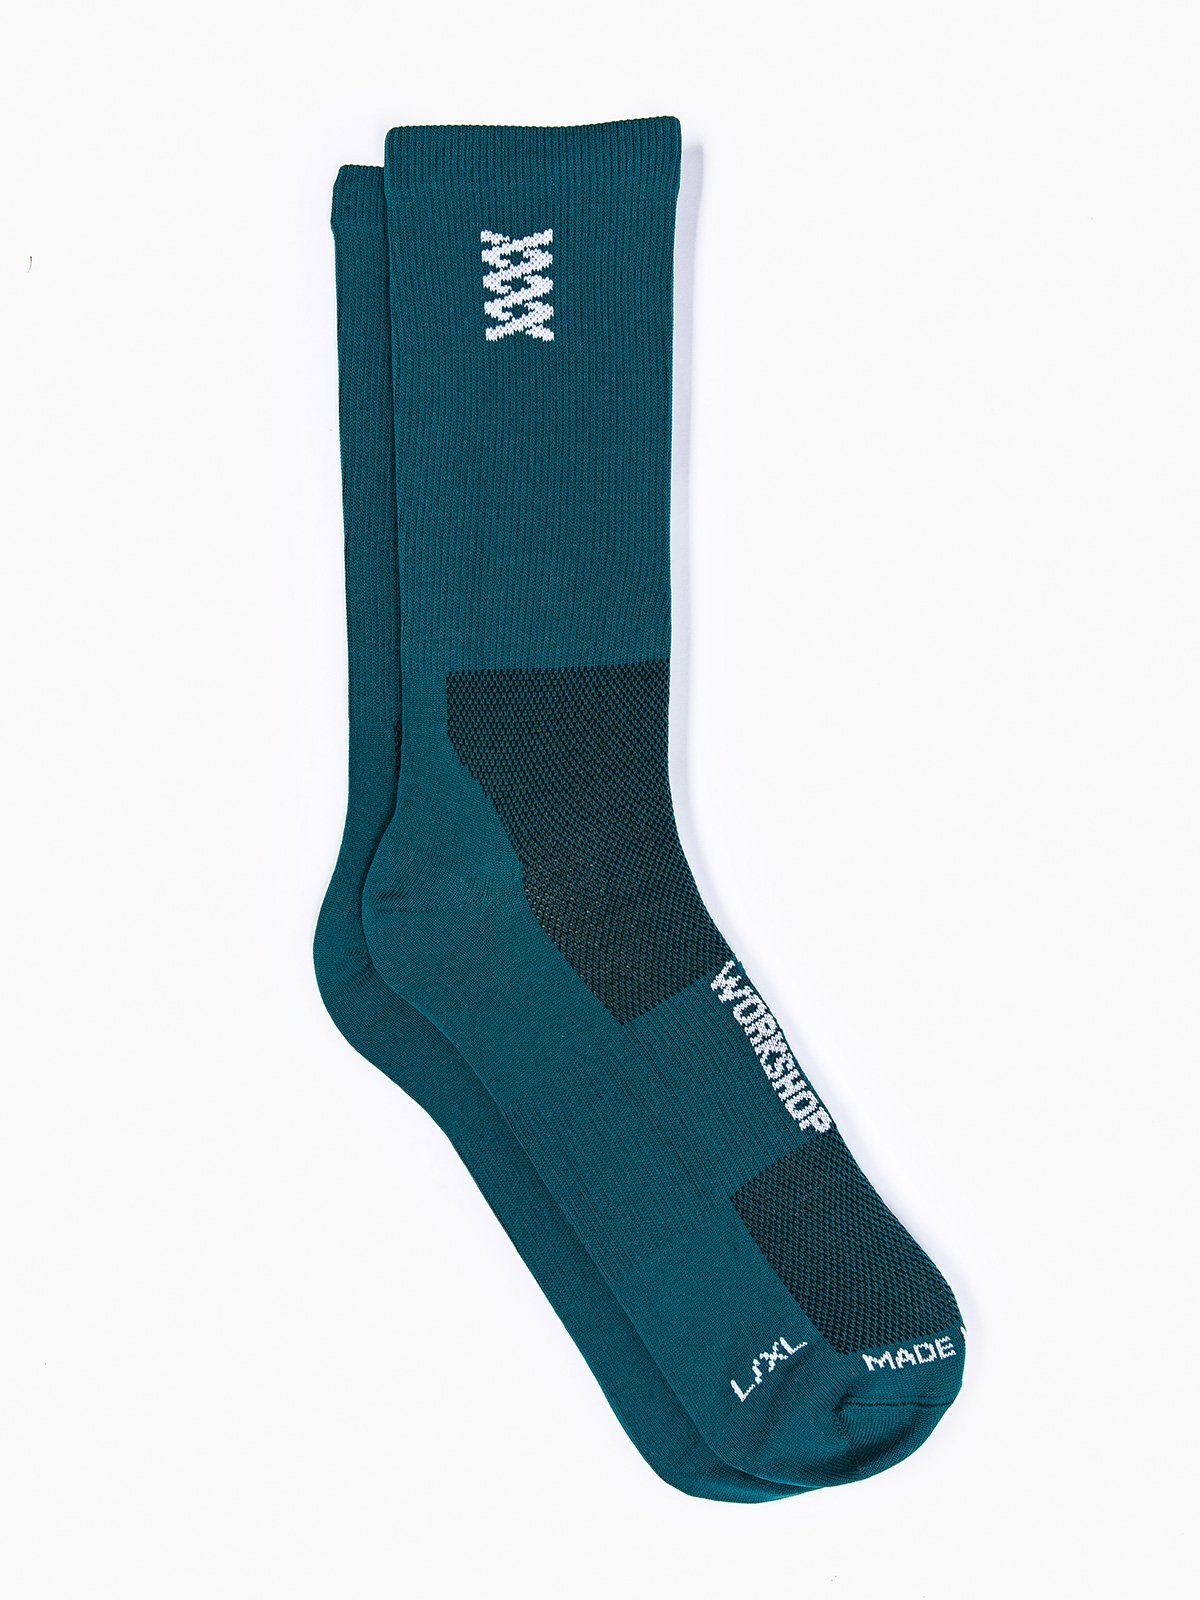 Mission Pro Socks by Mission Workshop - Weatherproof Bags & Technical Apparel - San Francisco & Los Angeles - Construit pour durer - Garanti pour toujours